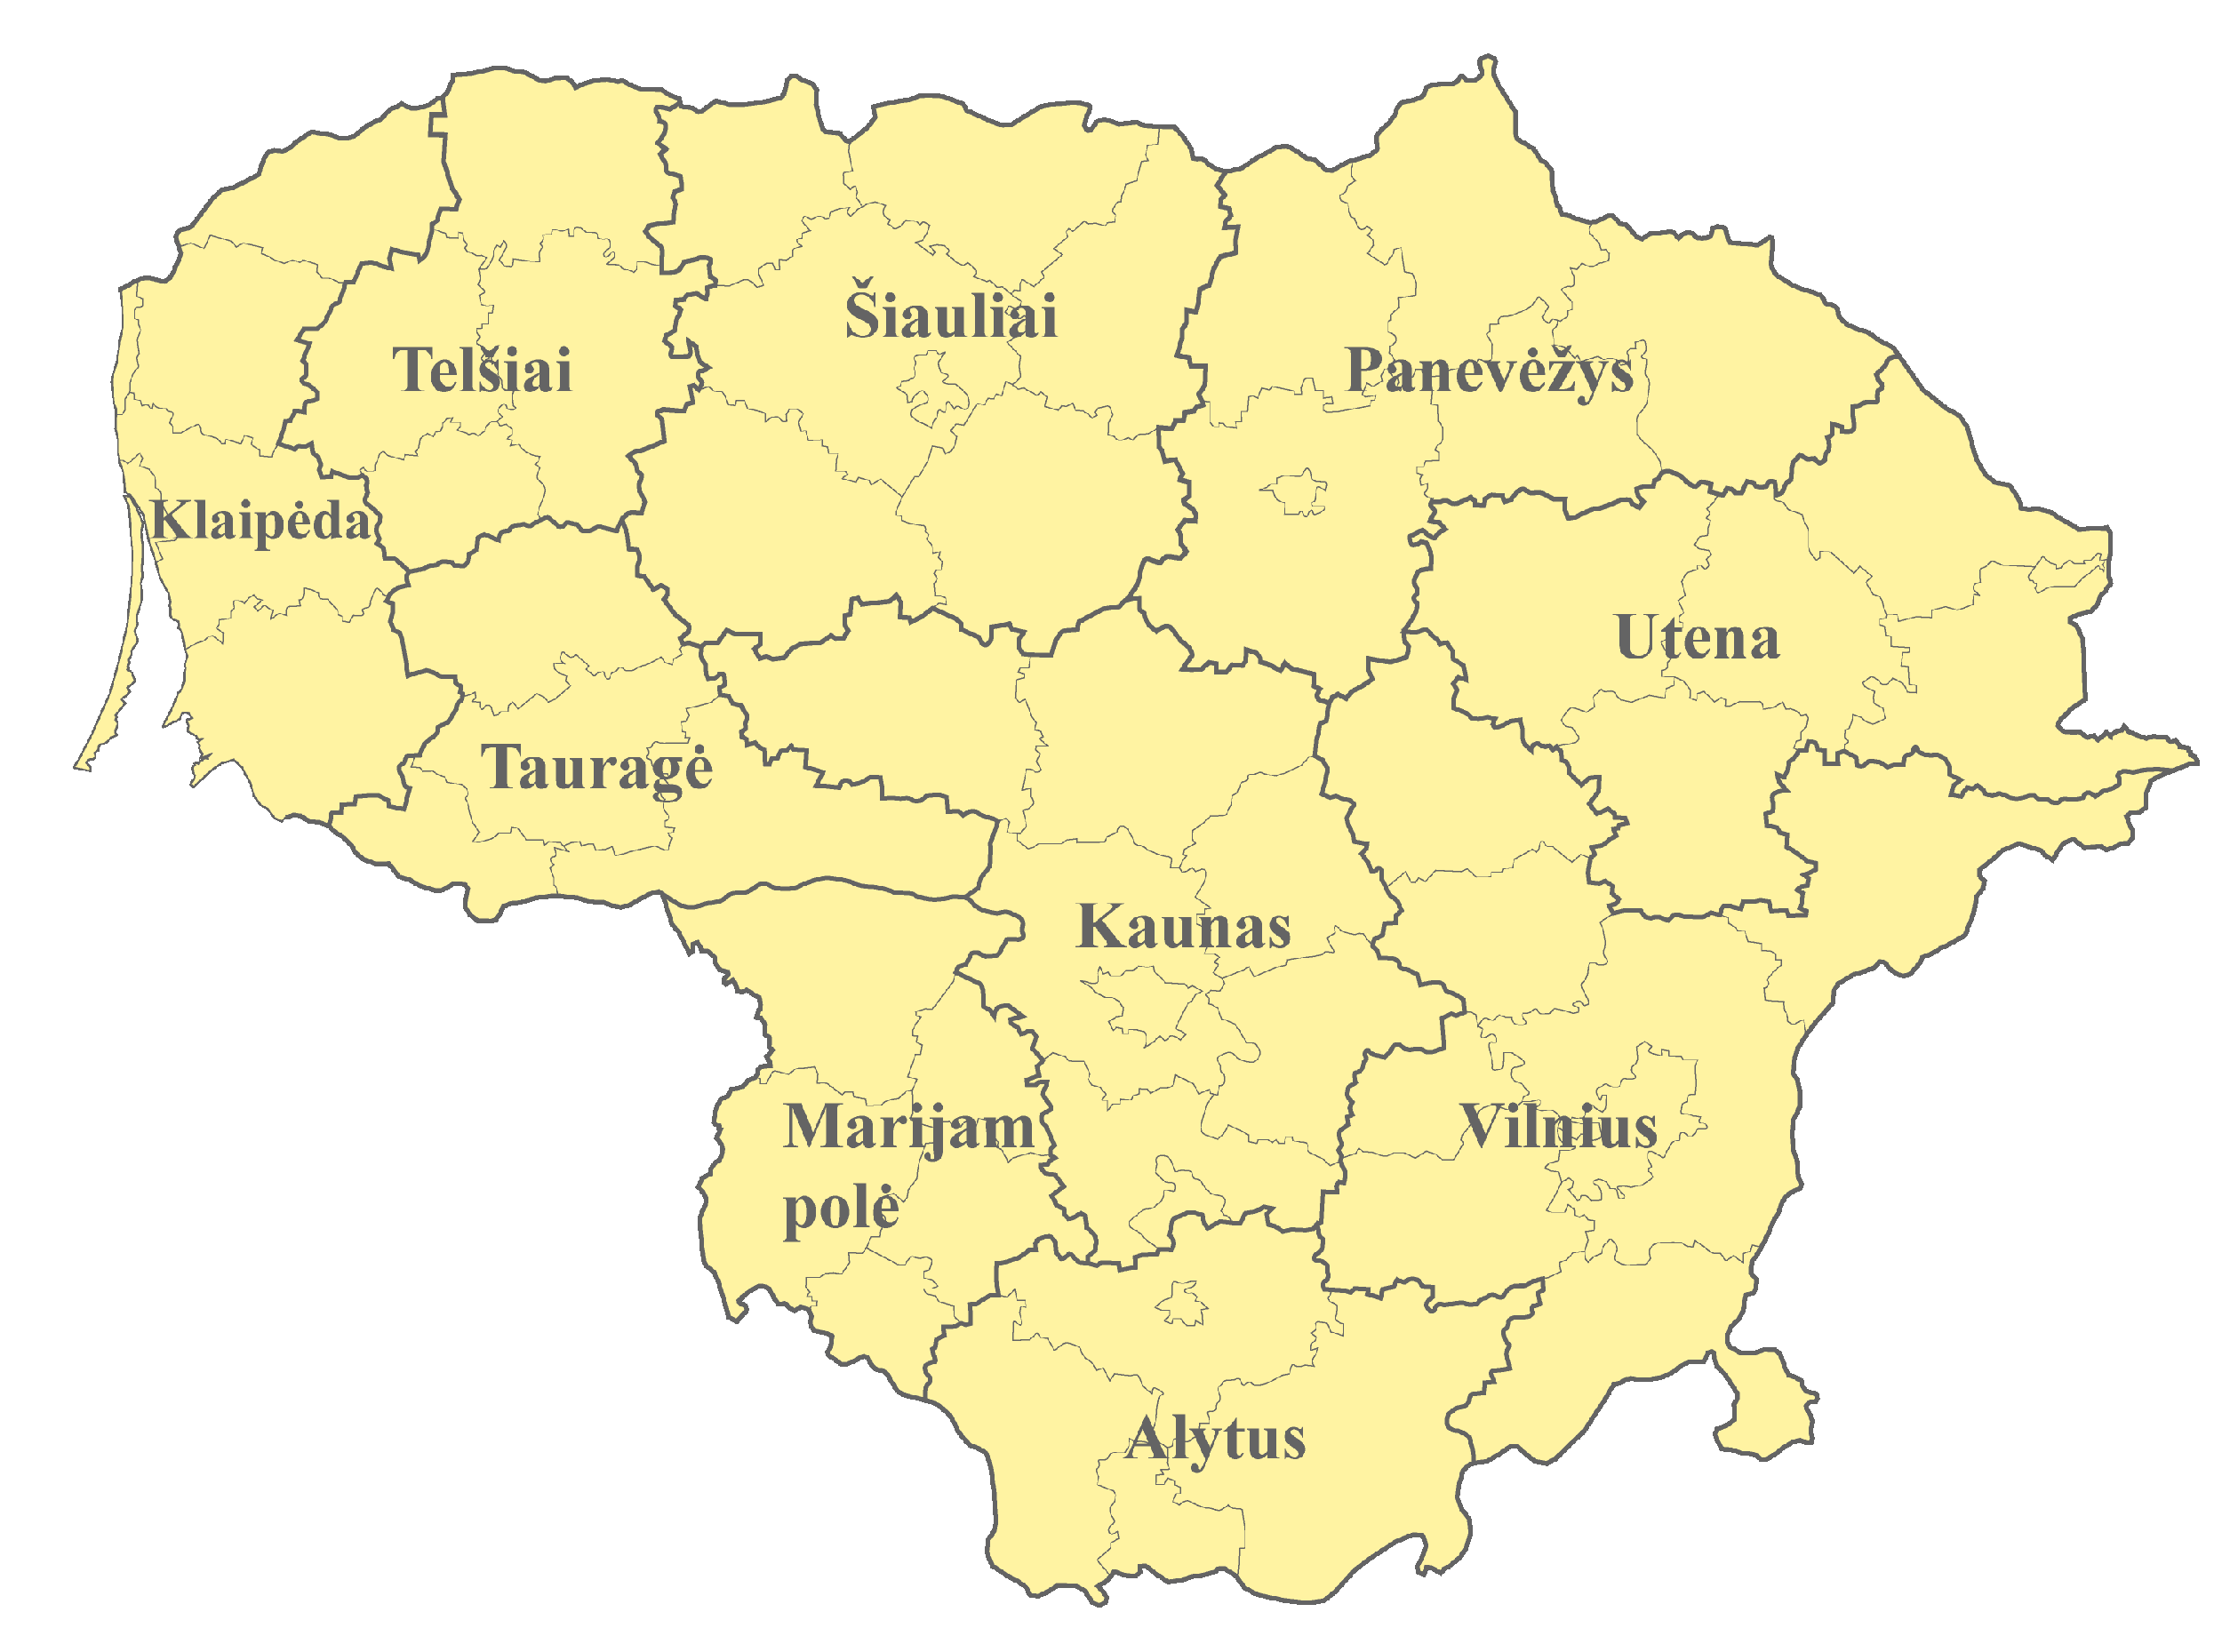 Litauen Karte nach Regionen gegliedert